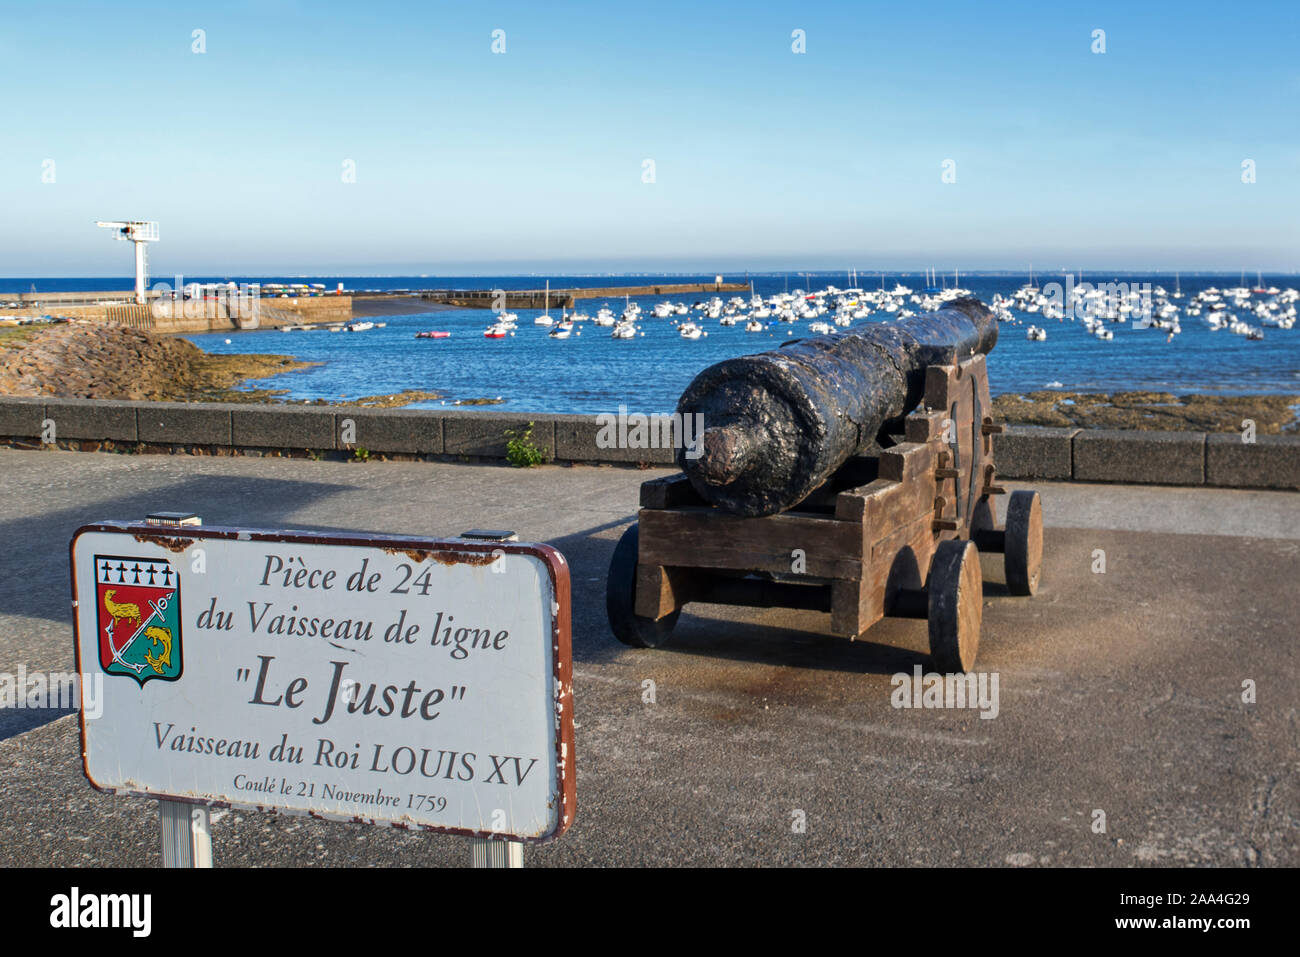 Das geborgene Schiff Kanone aus dem 18. Jahrhundert von der Juste, Schiff der Linie der Französischen Marine in Pornic, Pointe Saint-Gildas, Loire-Atlantique, Frankreich Stockfoto